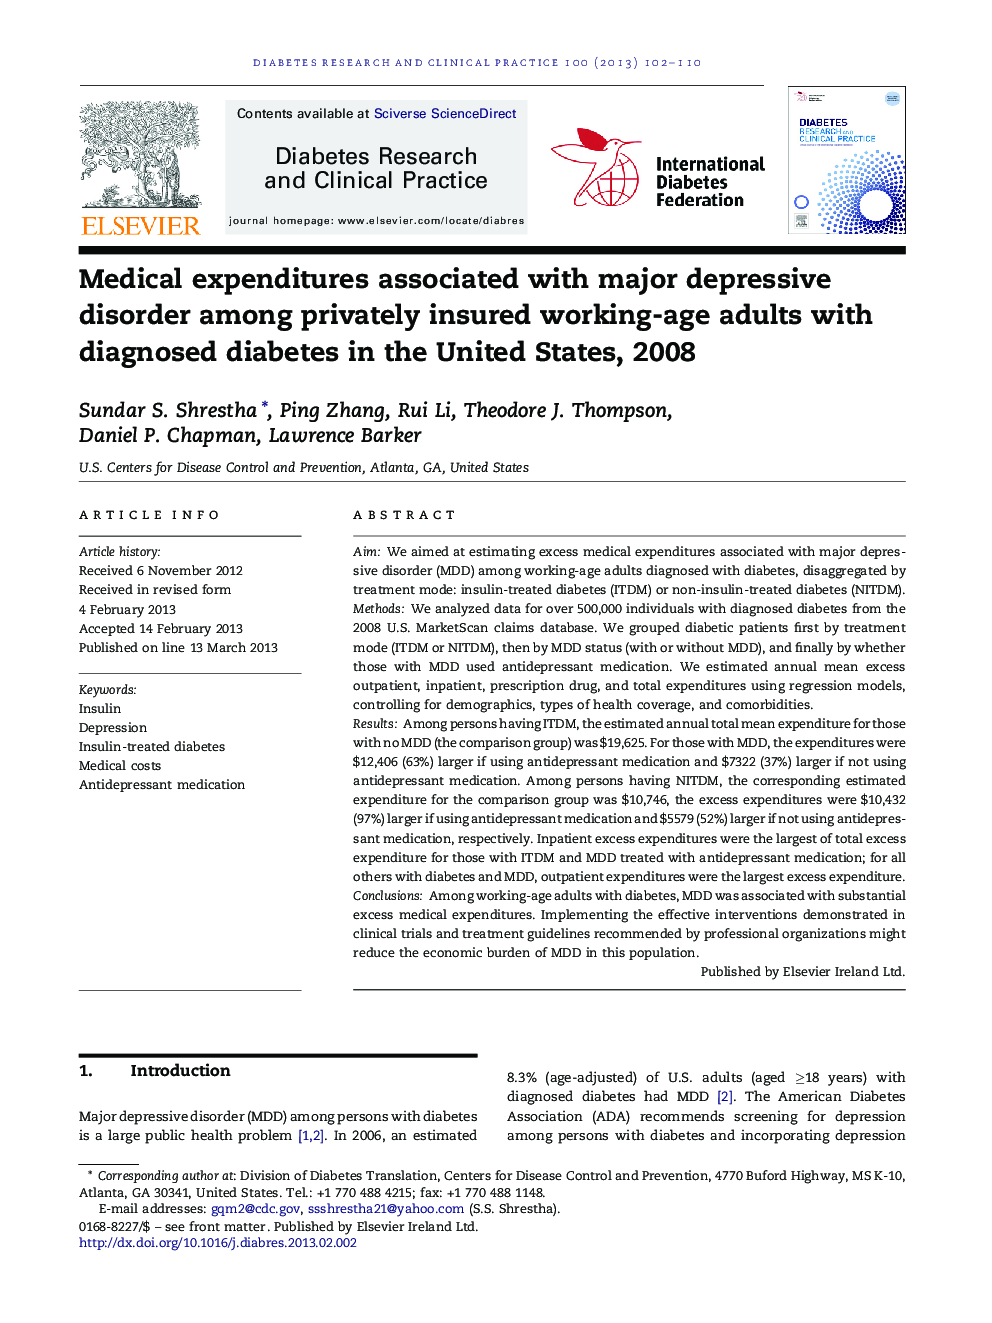 مصارف پزشکی مرتبط با اختلال افسردگی عمده در میان بزرگسالان سالم مشغول به کار با بیمه خصوصی با دیابت تشخیص داده شده در ایالات متحده، 2008 